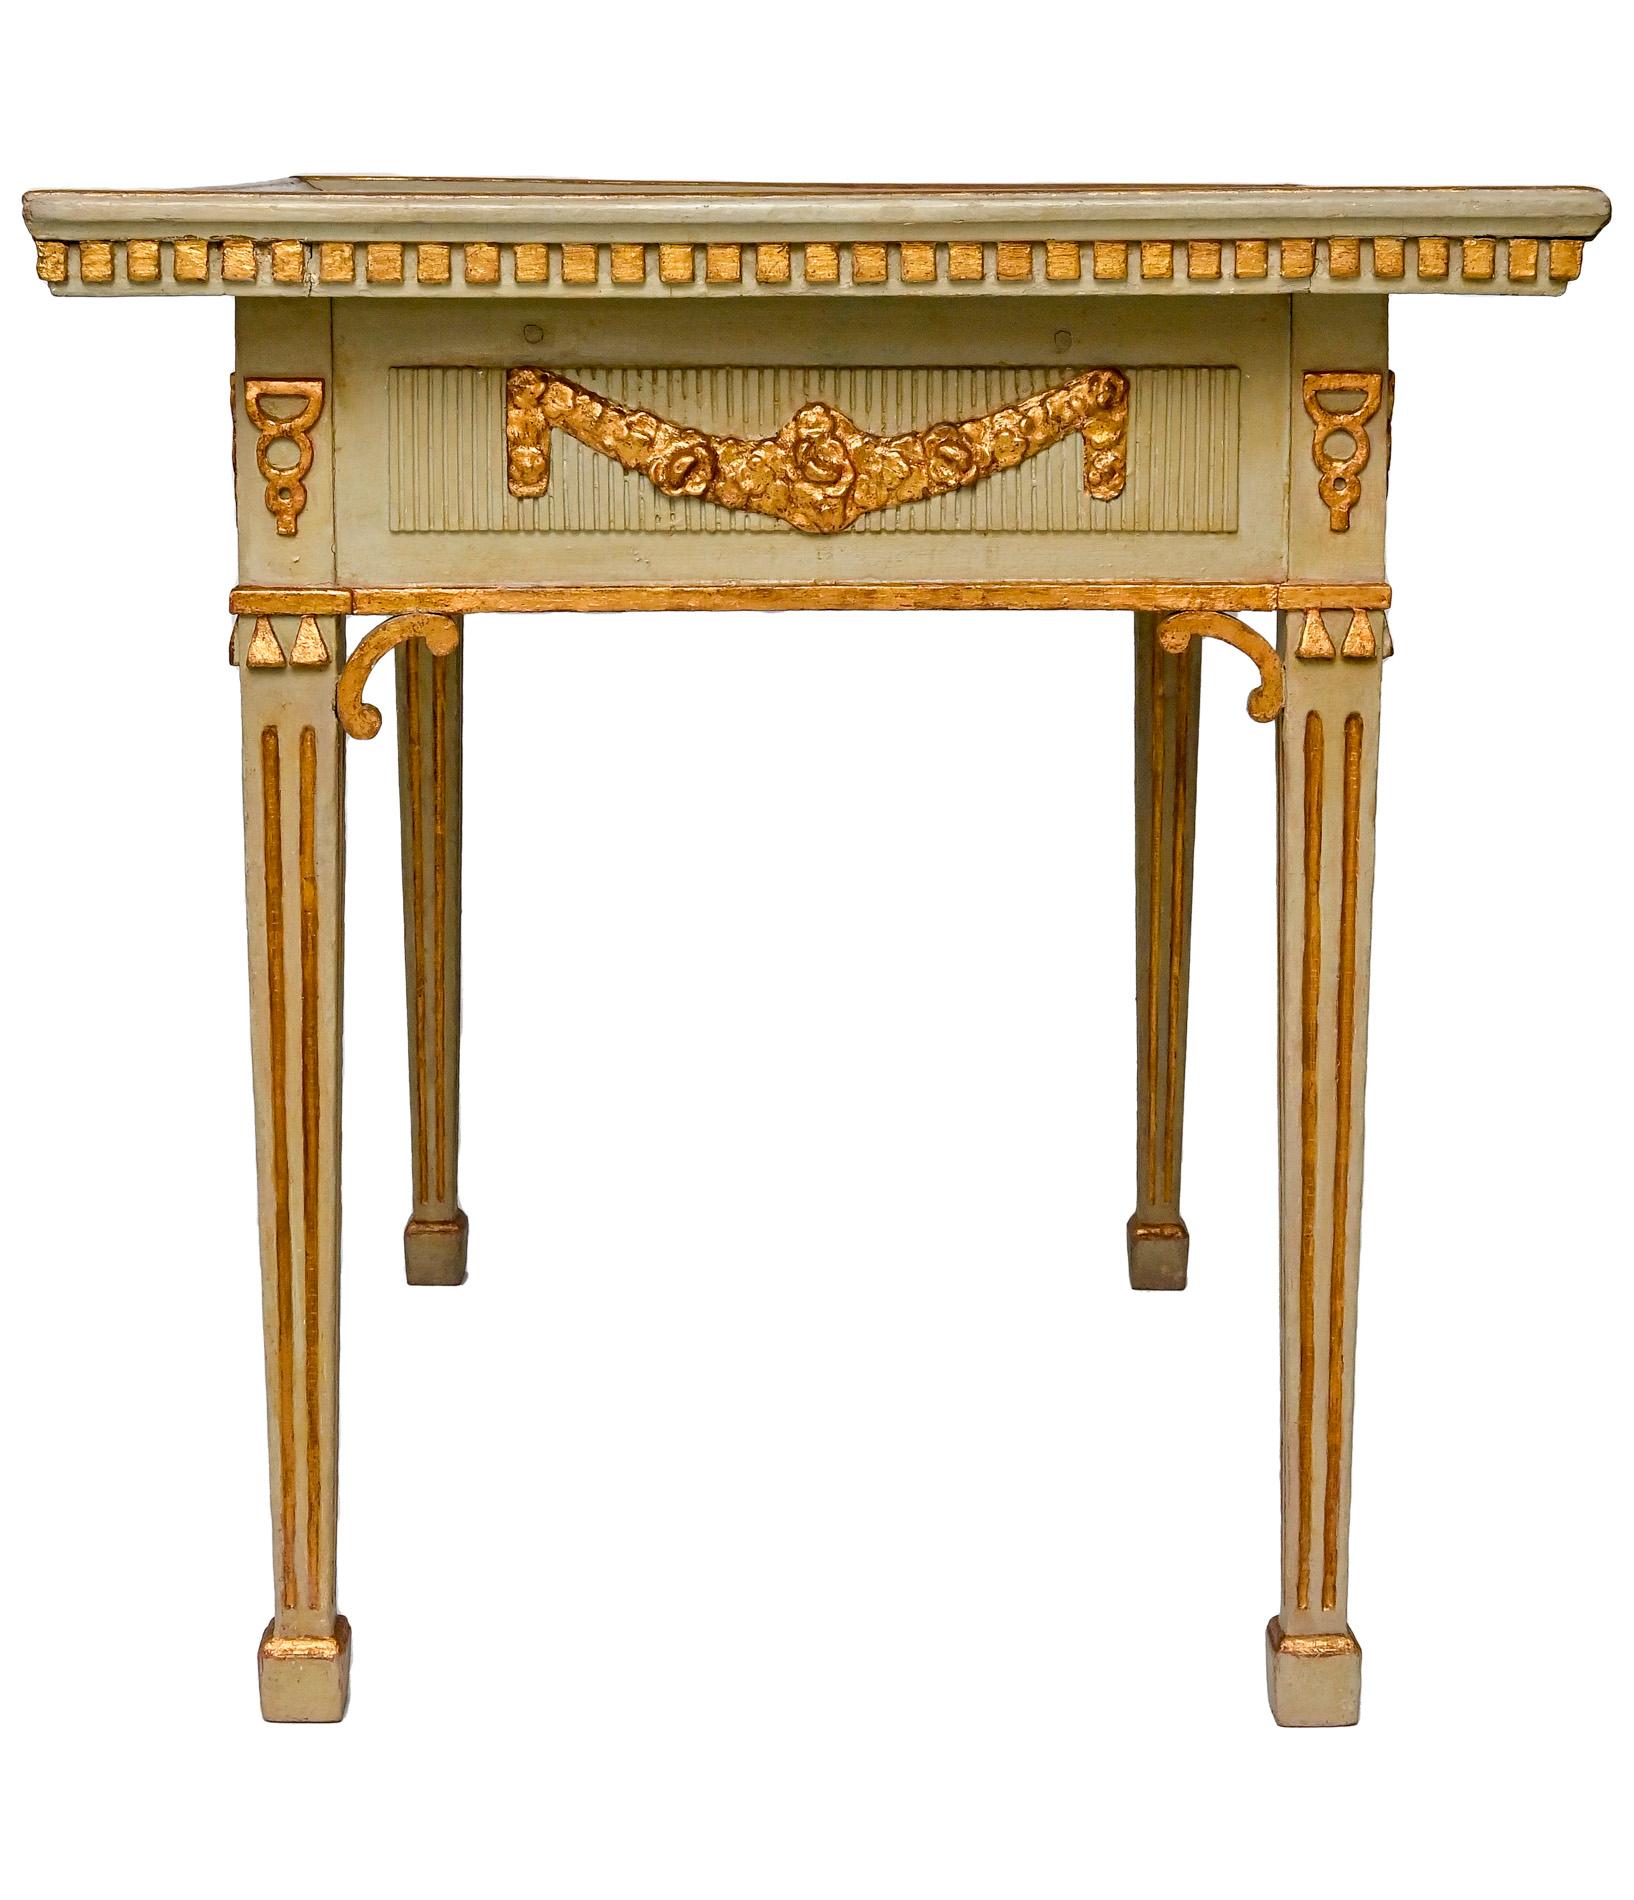 Una mesa de azulejos muy rara e inusual de Schleswig Holstein, con su engaste y dorado originales. Son especiales las tallas, que están alrededor y permiten colocar la mesa tanto en la habitación como contra la pared. Los azulejos Delfter son